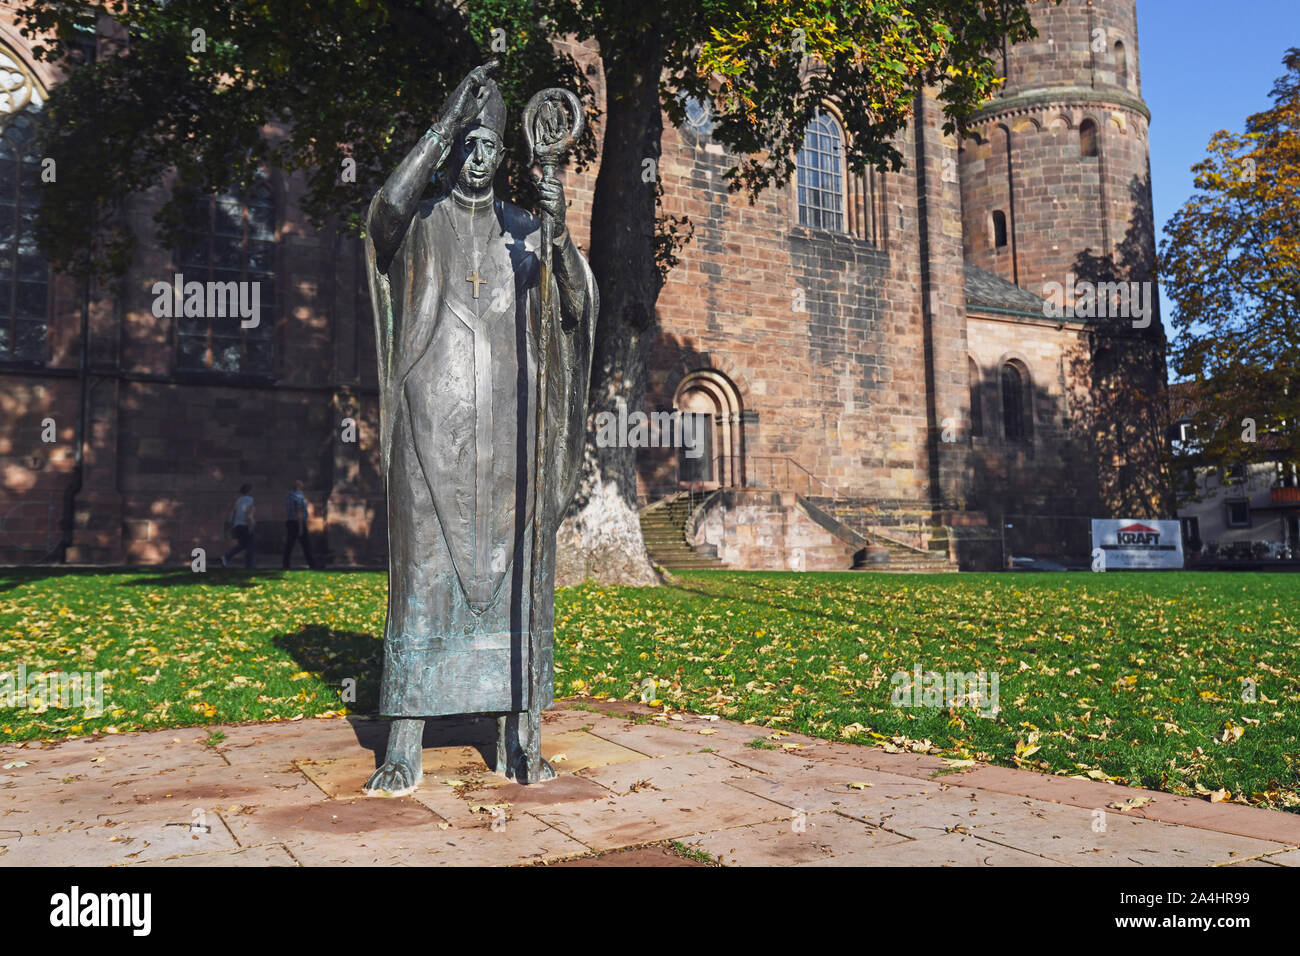 Worm, Germania - Ottobre 2019: scultura di metallo del vescovo Burcardo di Worms, autore di un diritto canonico raccolta di venti libri conosciuta come 'Decretum' Foto Stock